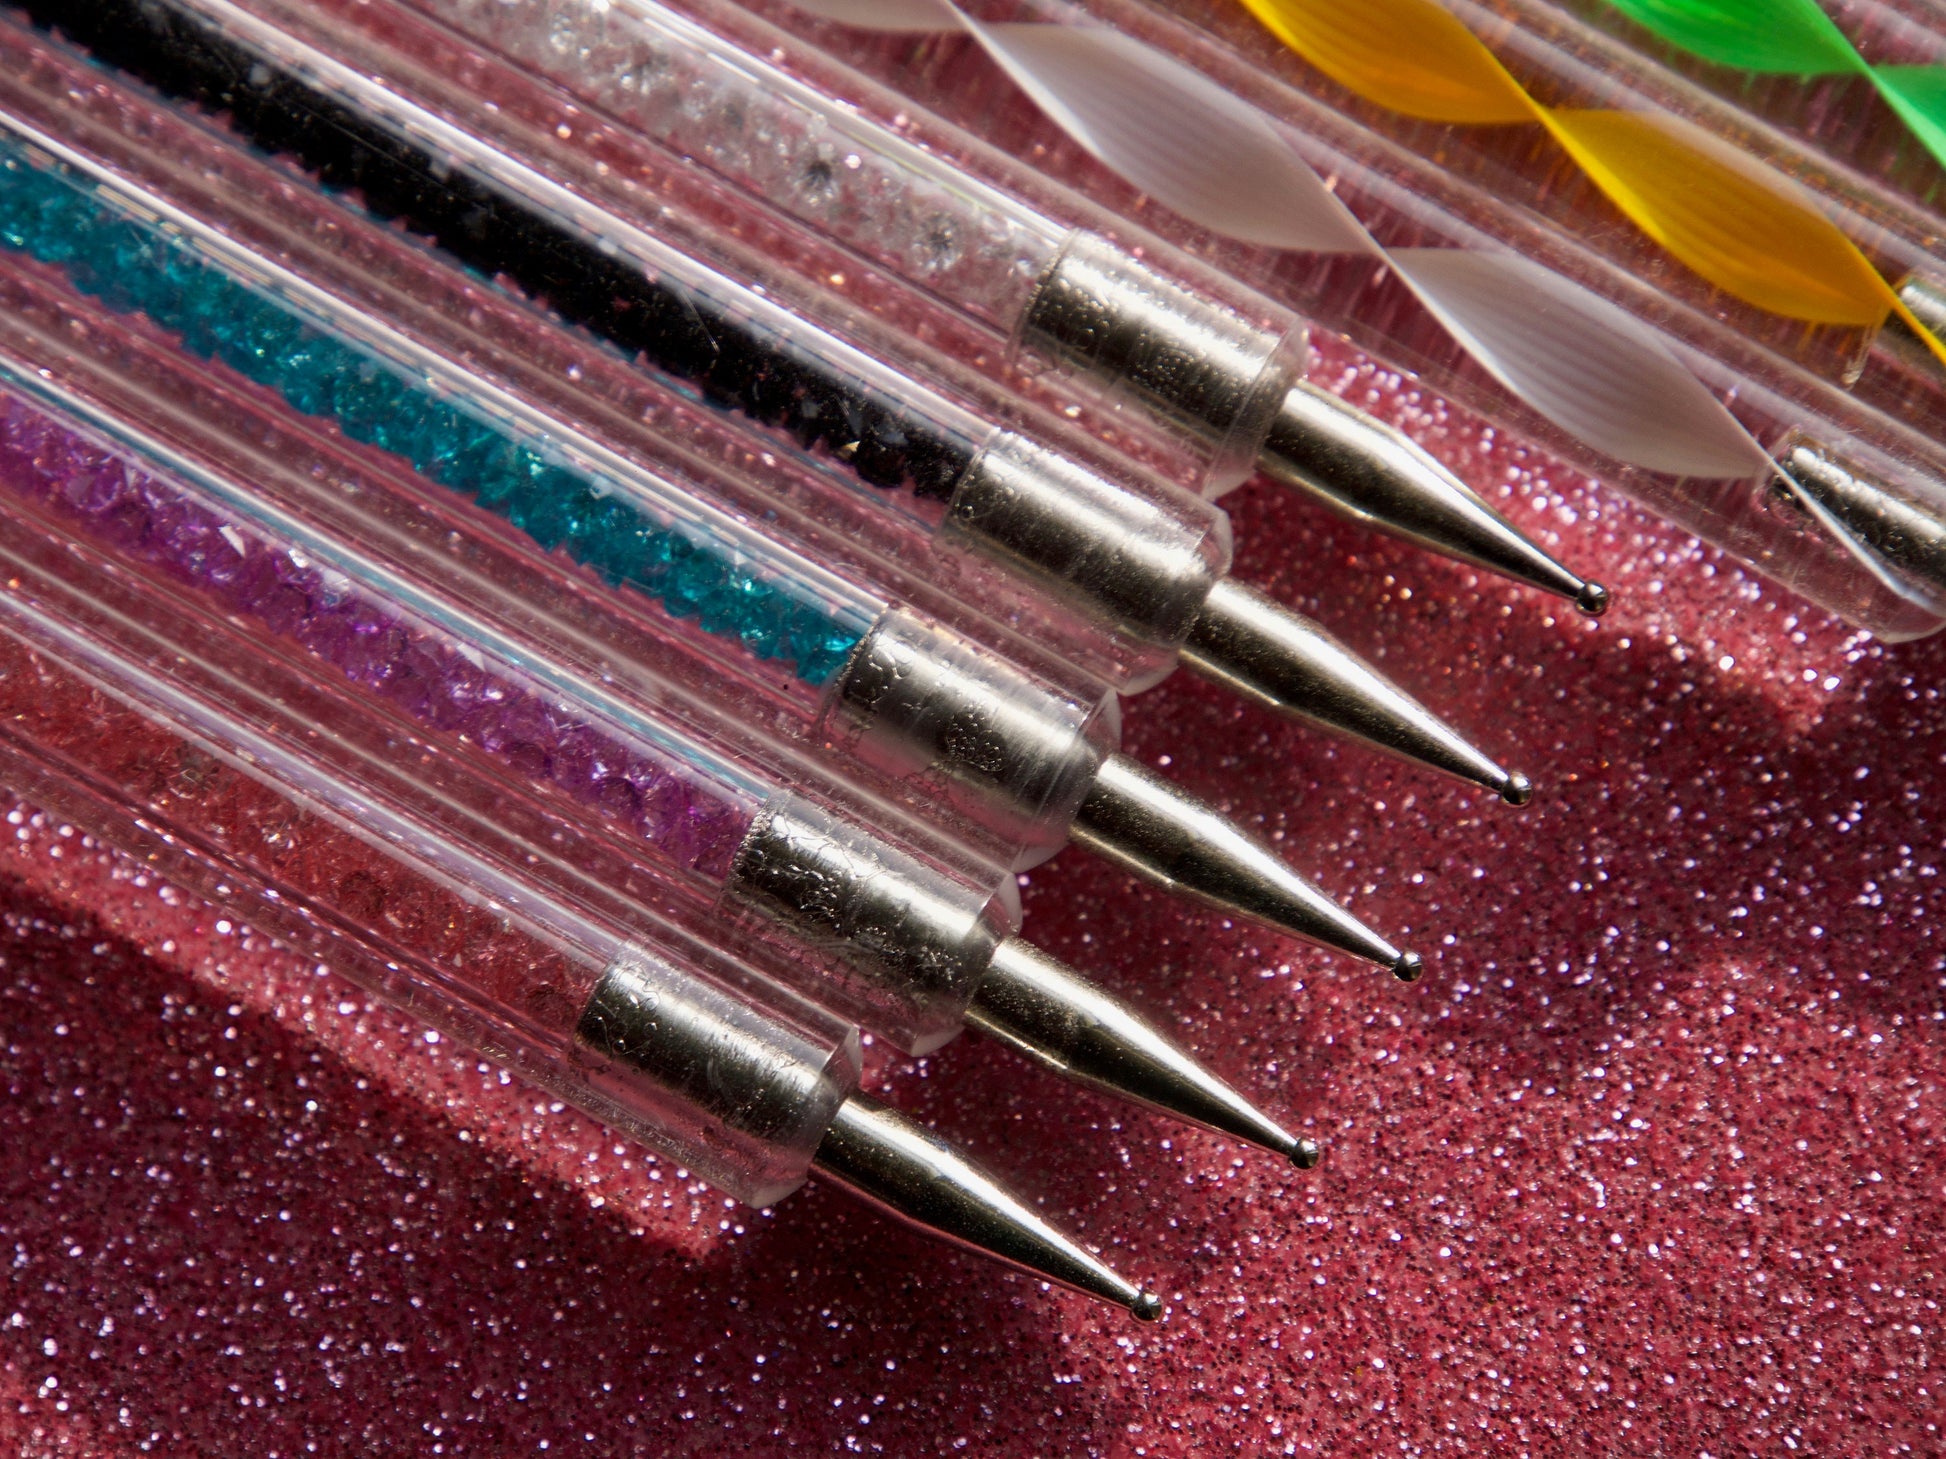 Art Dotting Pen Tools Manicure  Rhinestone Dotting Pen Set - 5pcs